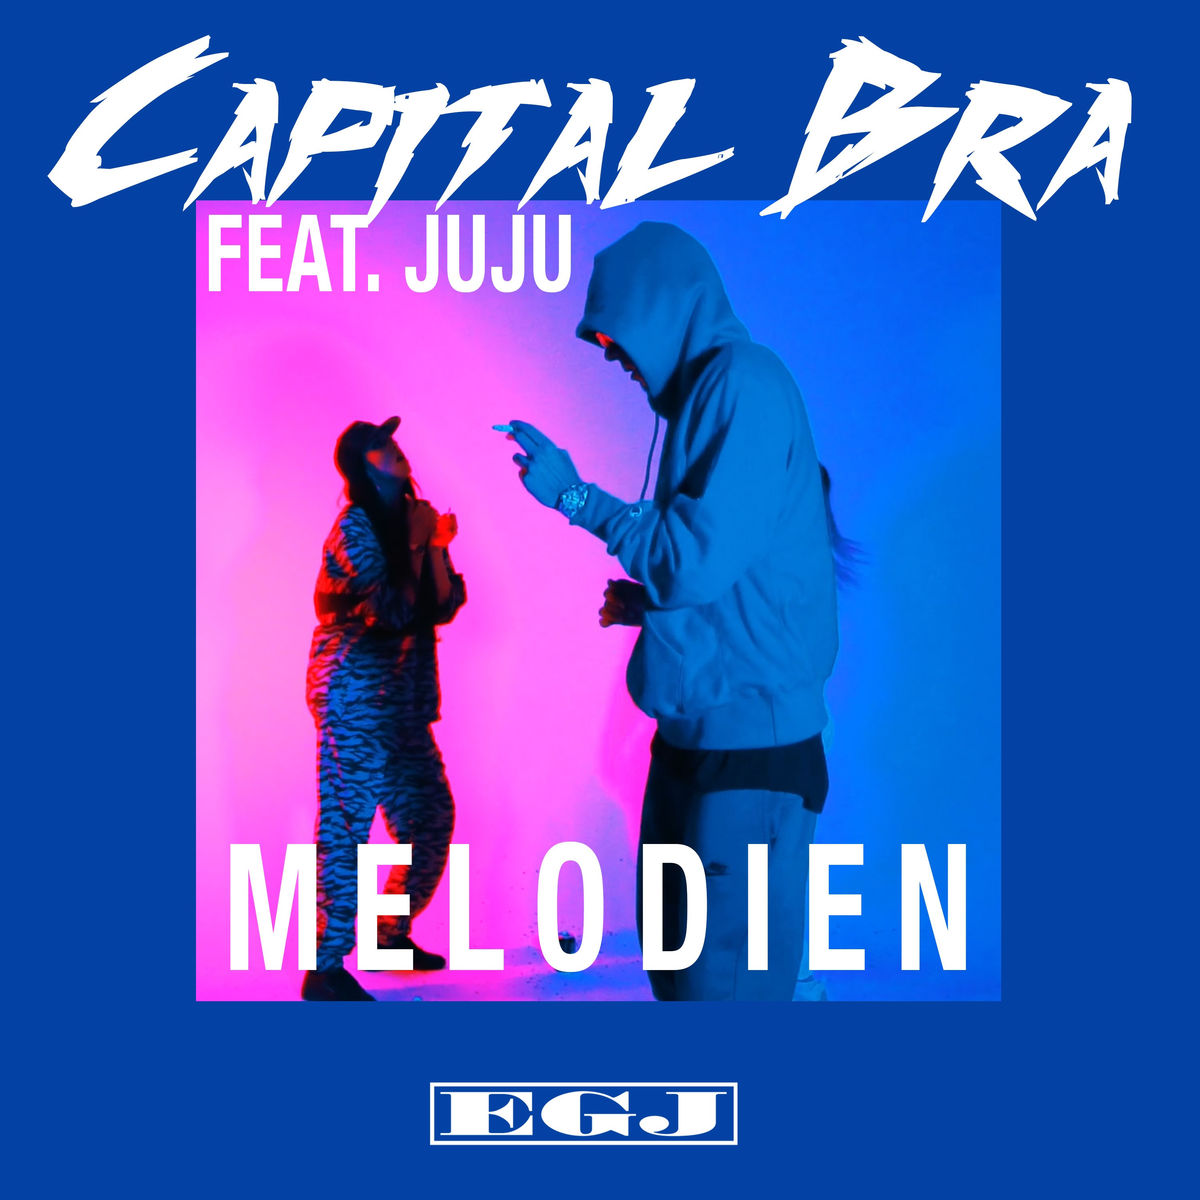 Capital Bra Feat Juju Melodien Hitparade Ch